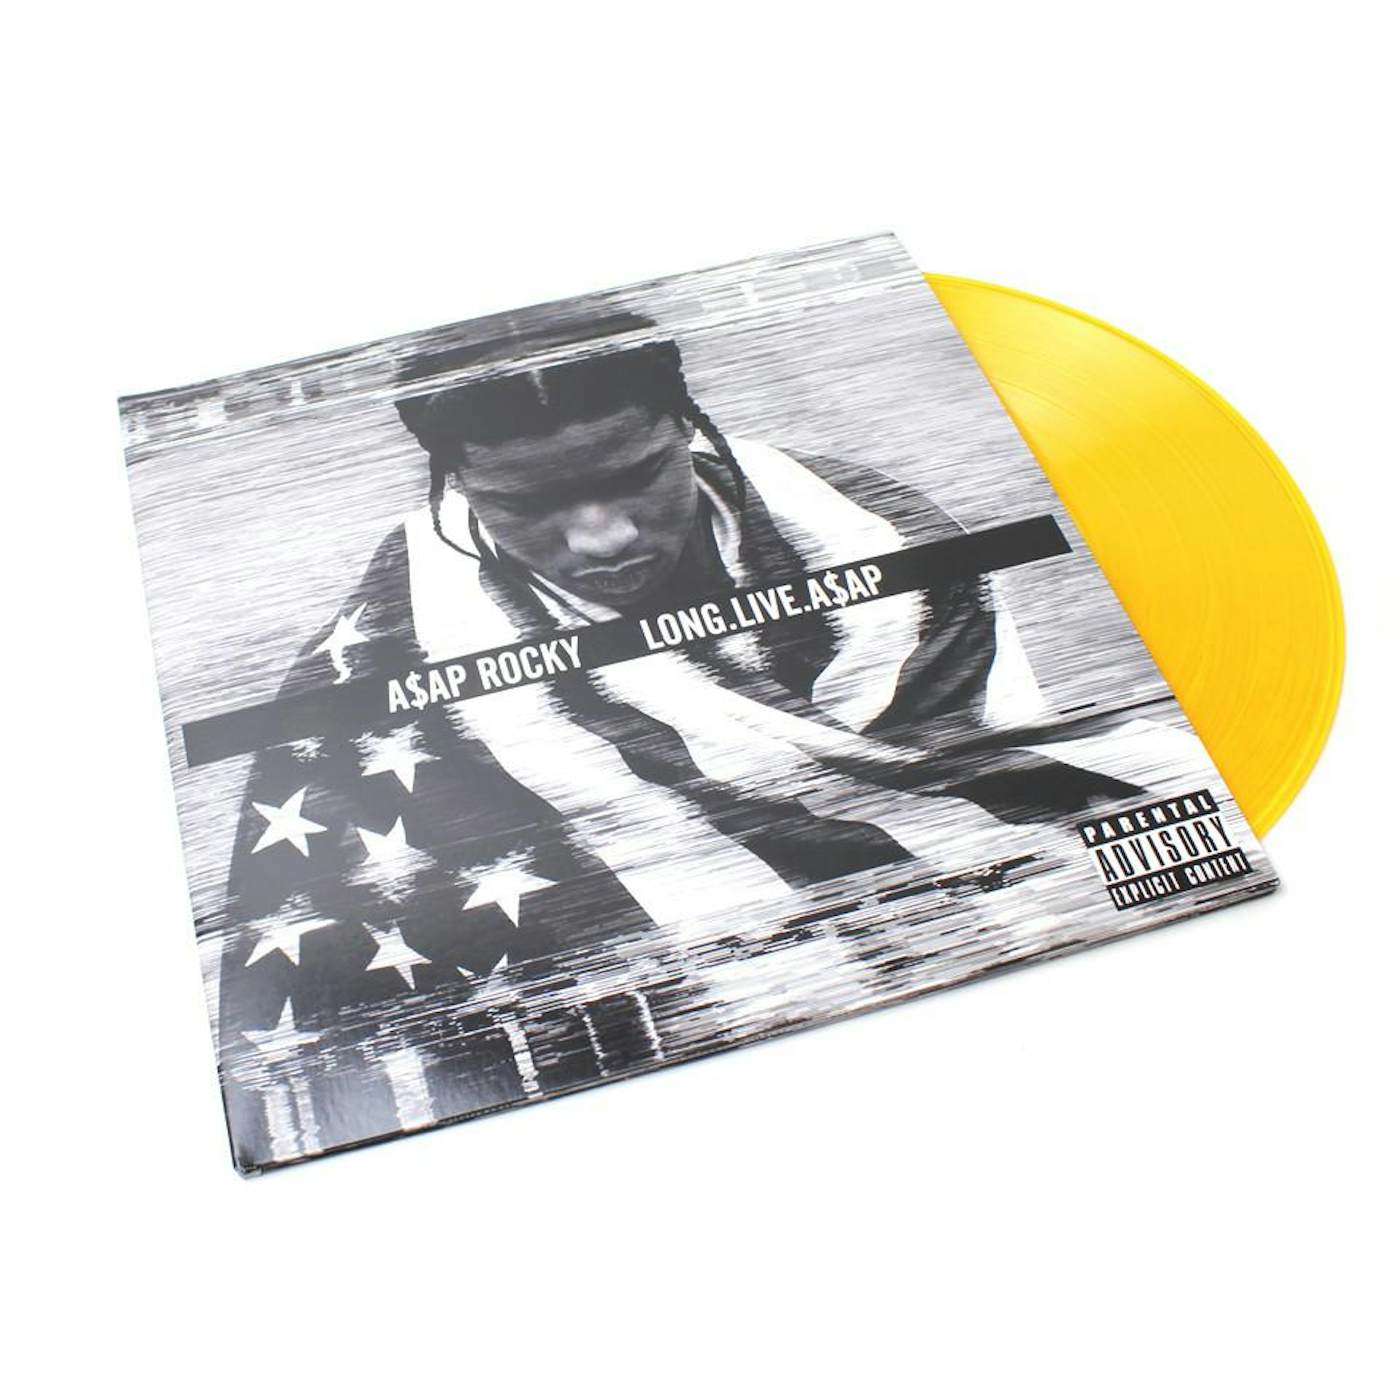 A$AP Rocky - Long.Live.A$AP (2xLP - Orange Translucent Vinyl)